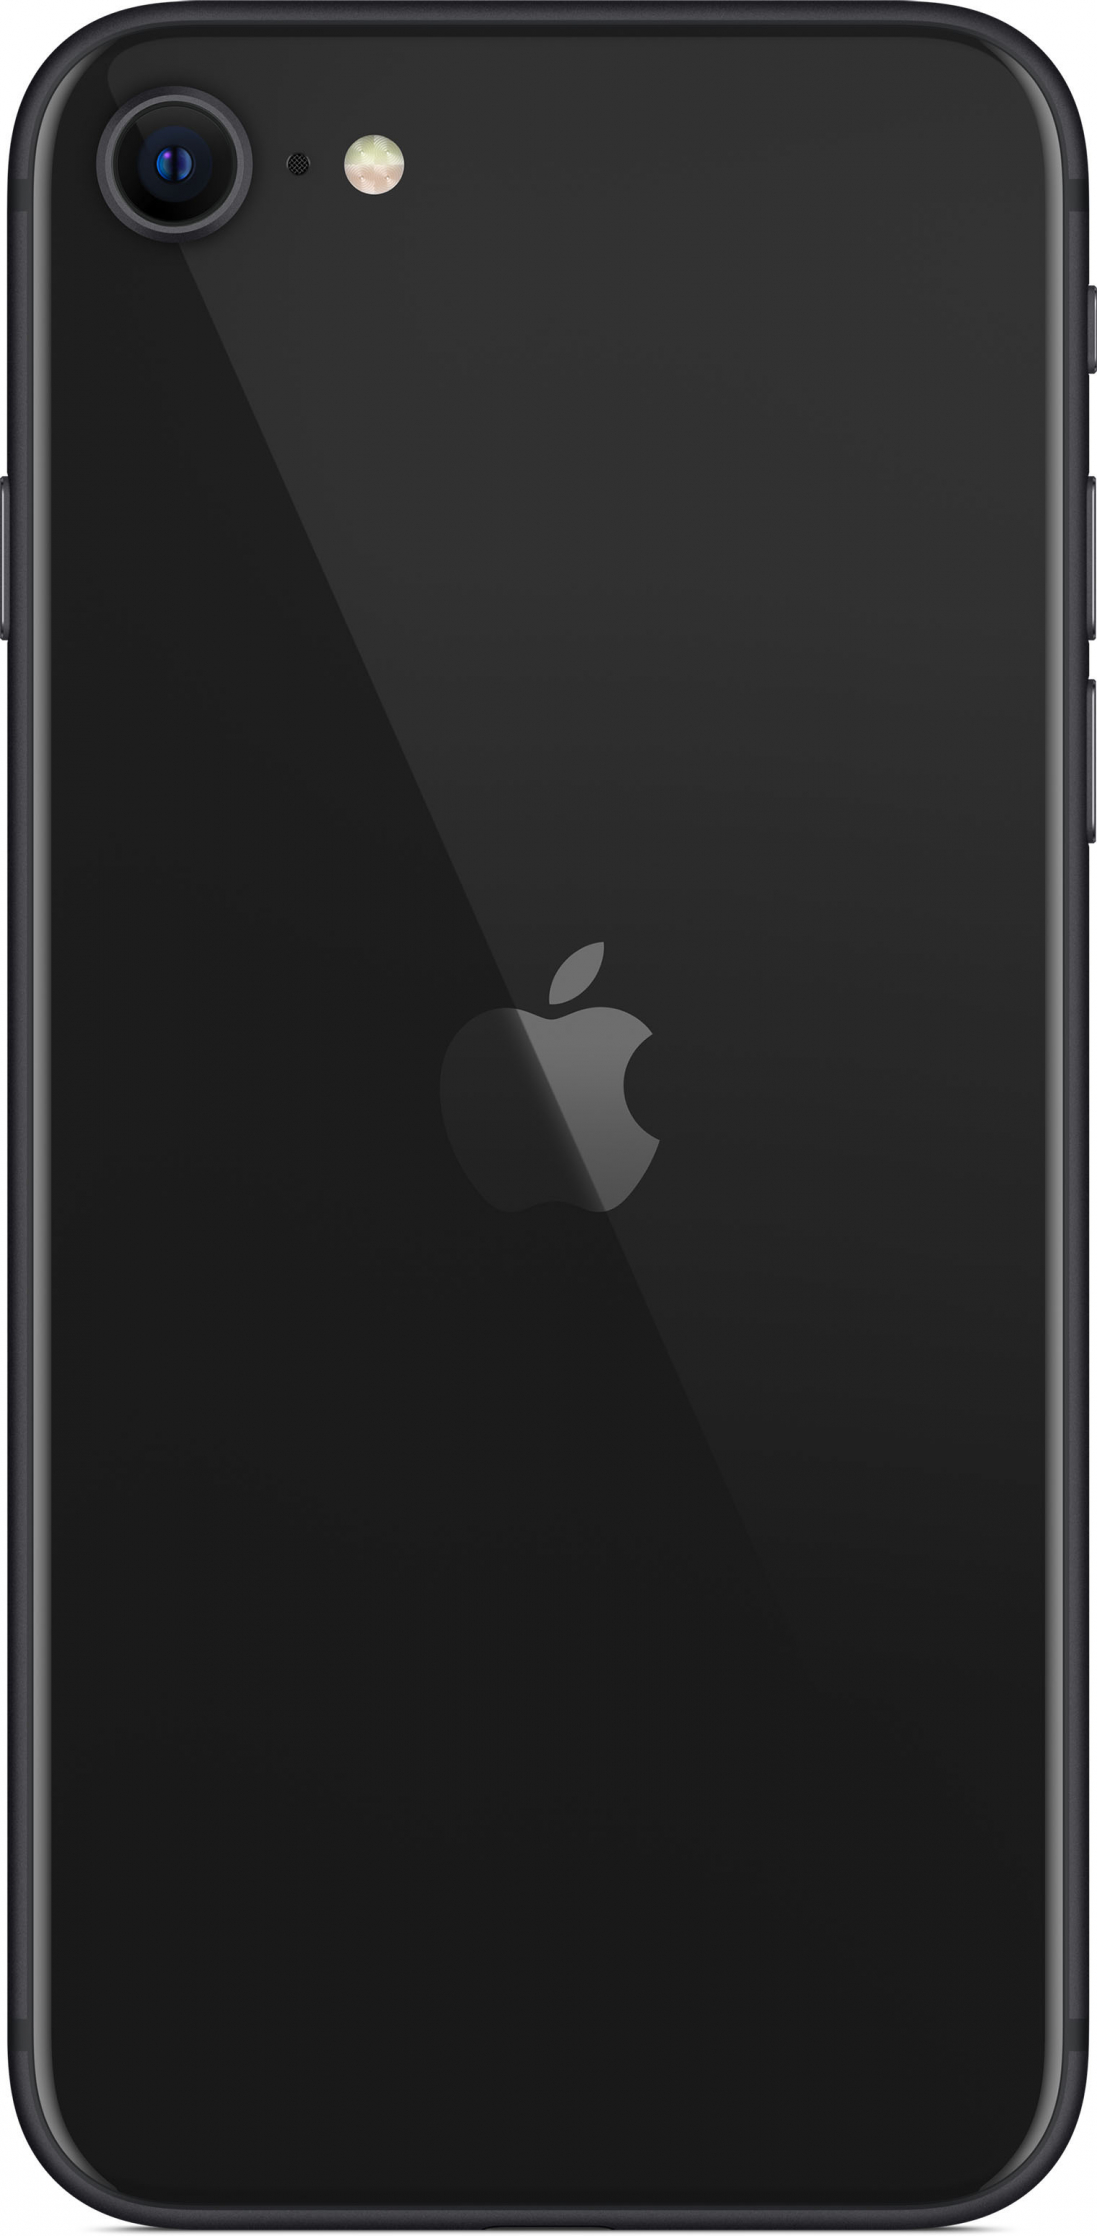 Apple iPhone SE (2020) 256GB (черный)